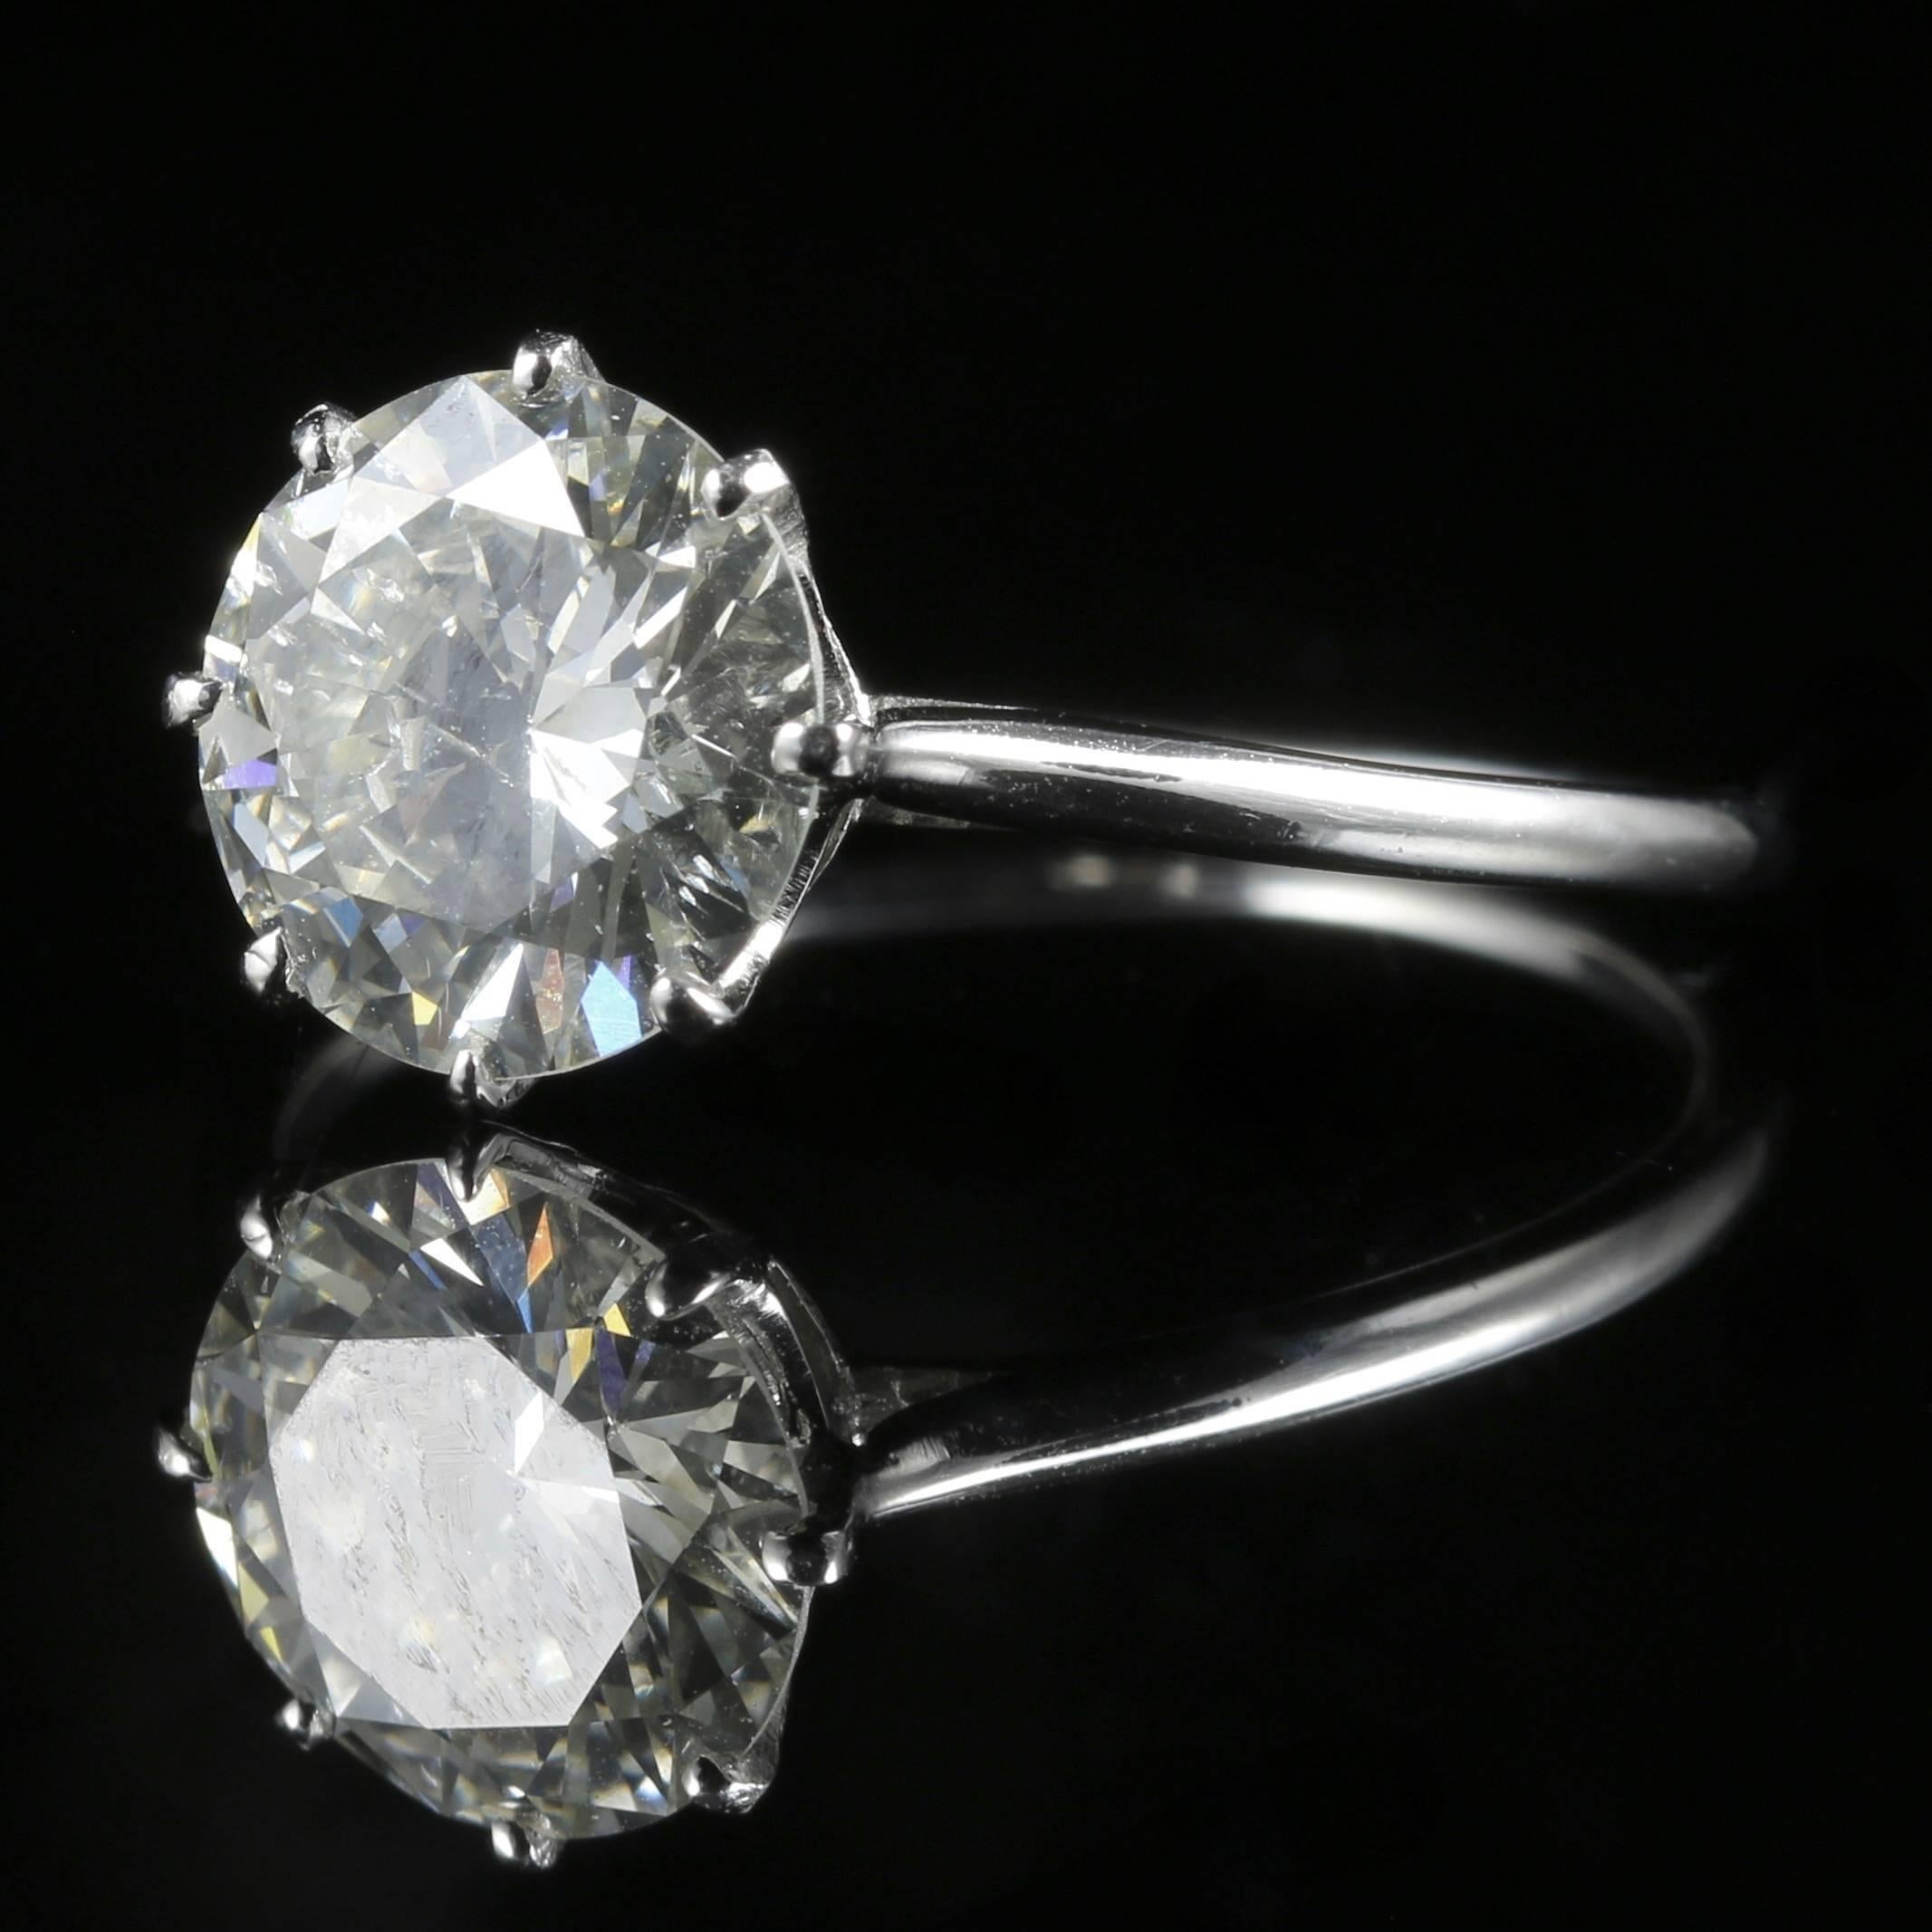 Edwardian Antique Diamond Solitaire Ring 2.30 Carat Platinum Engagement Ring, circa 1910